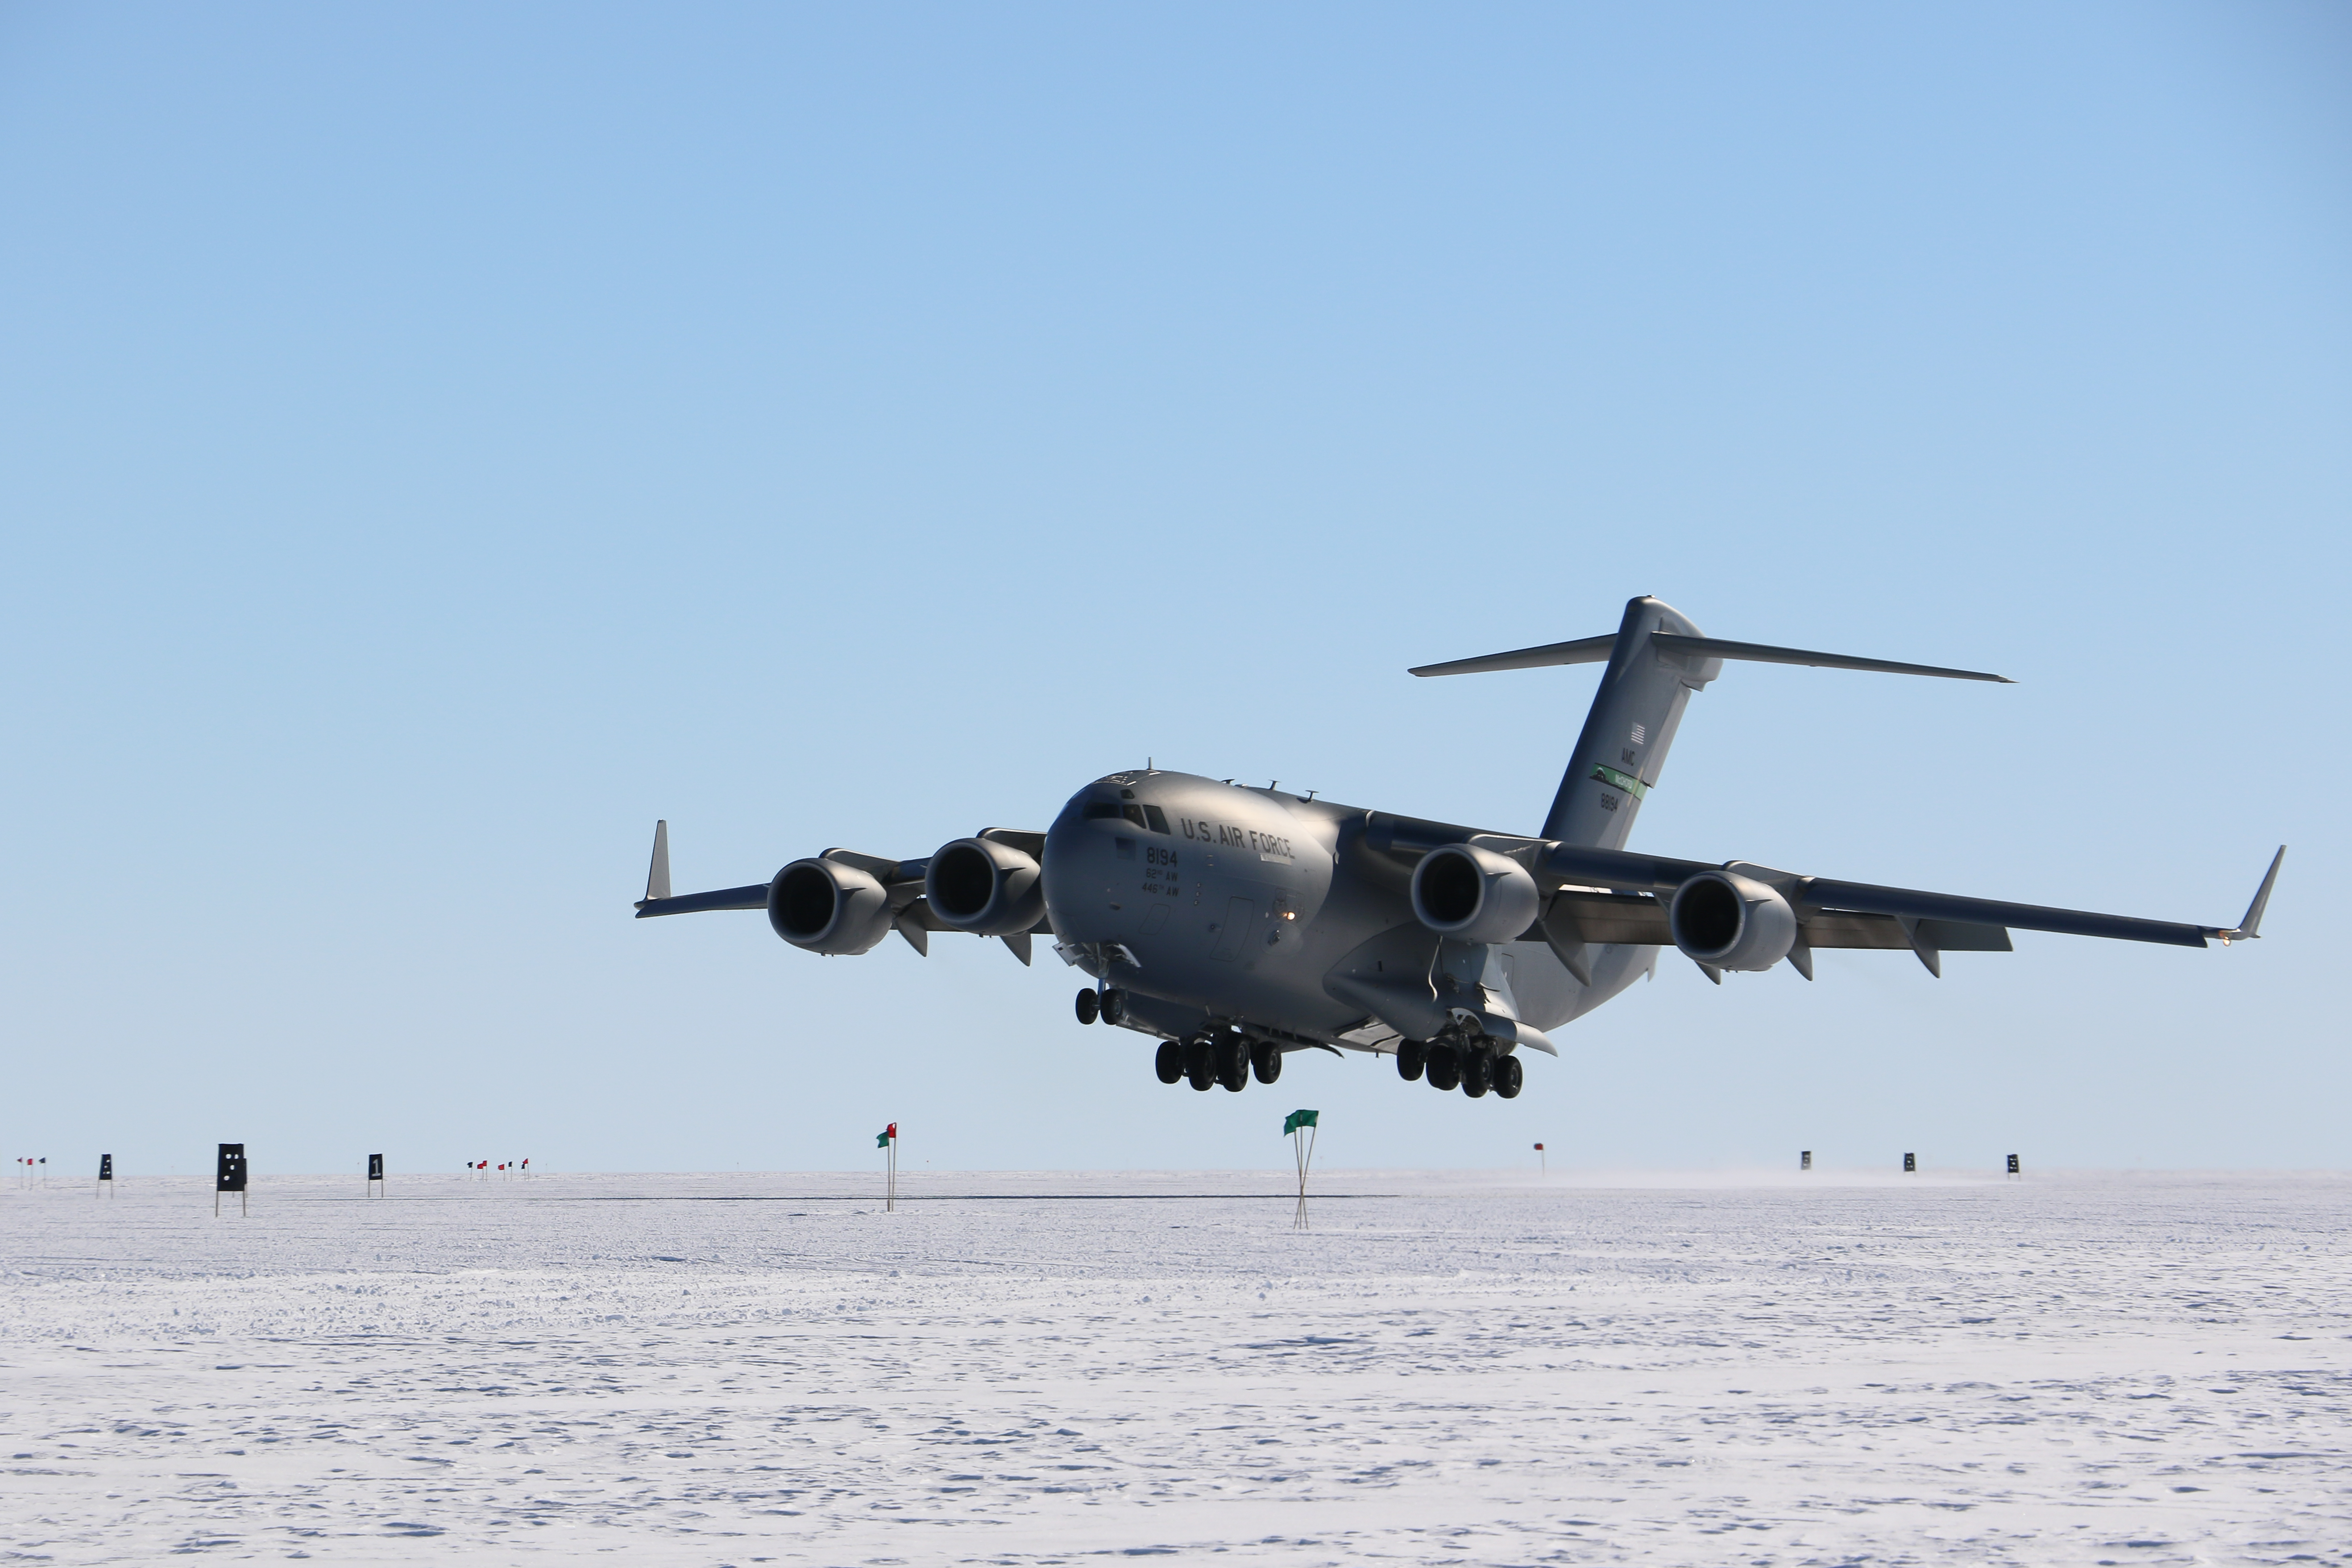 A jet landing on a frozen runway.